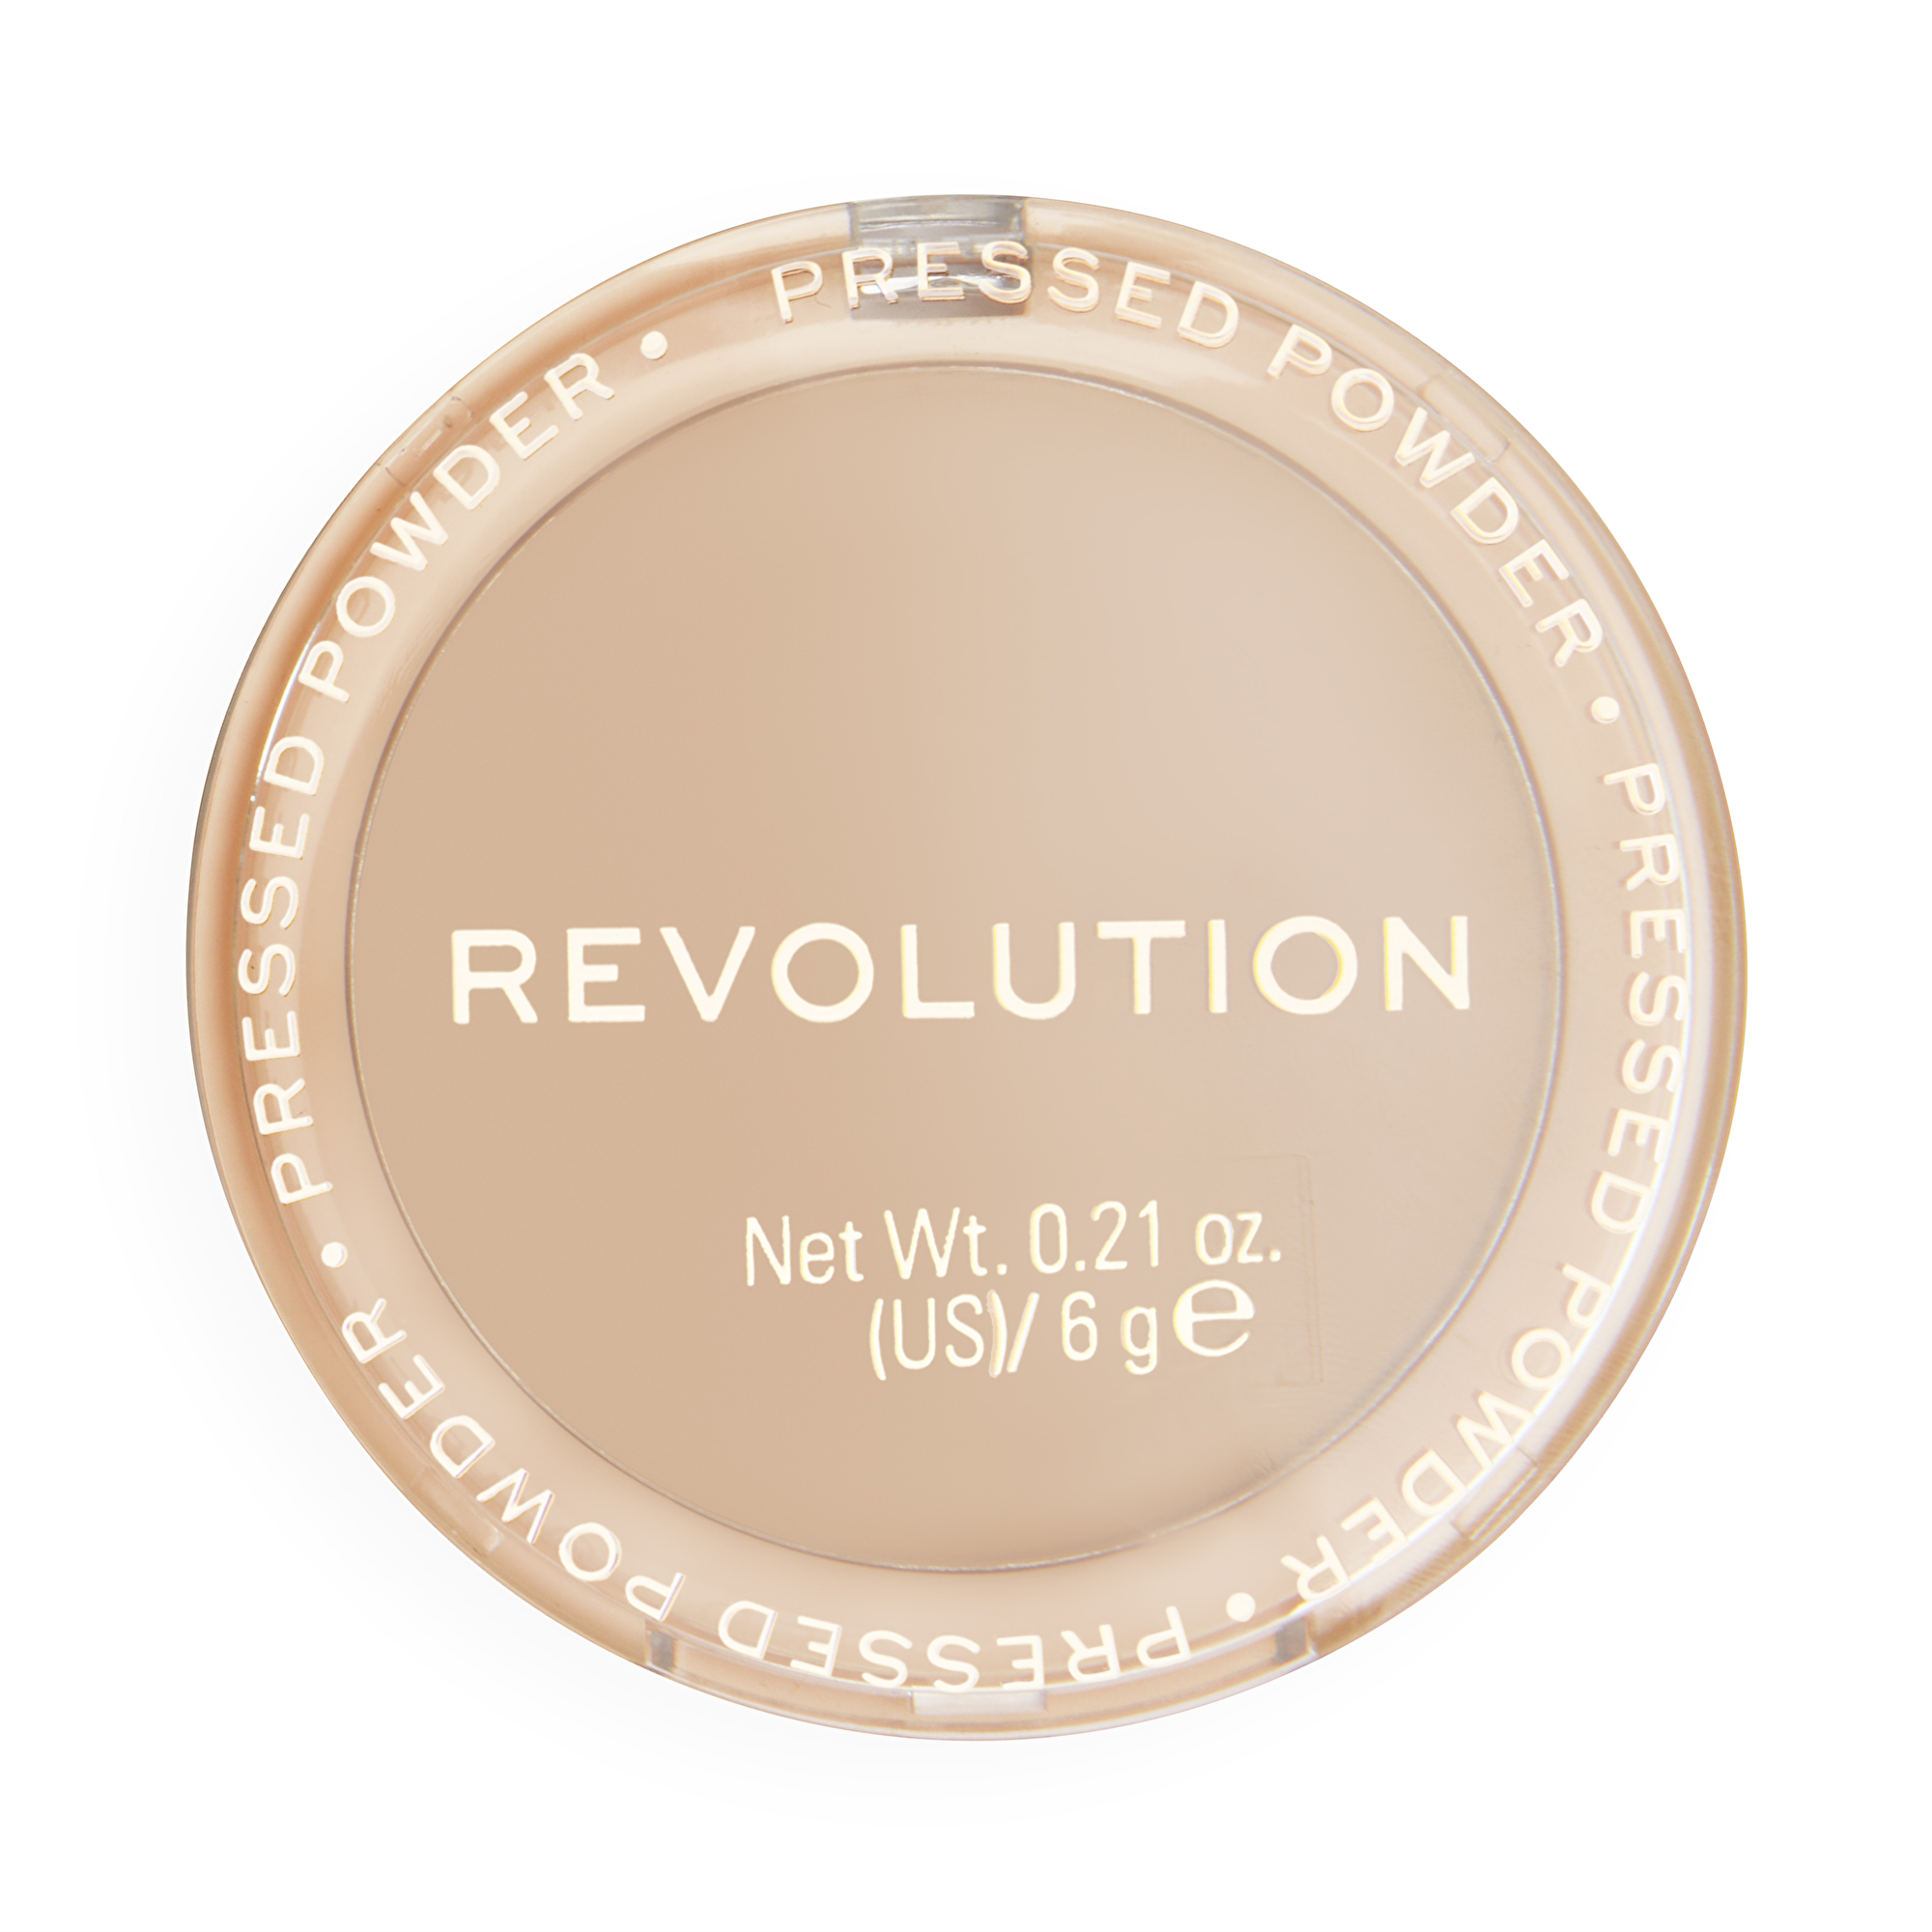 Revolution Pudr Reloaded (Pressed Powder) 6 g Beige